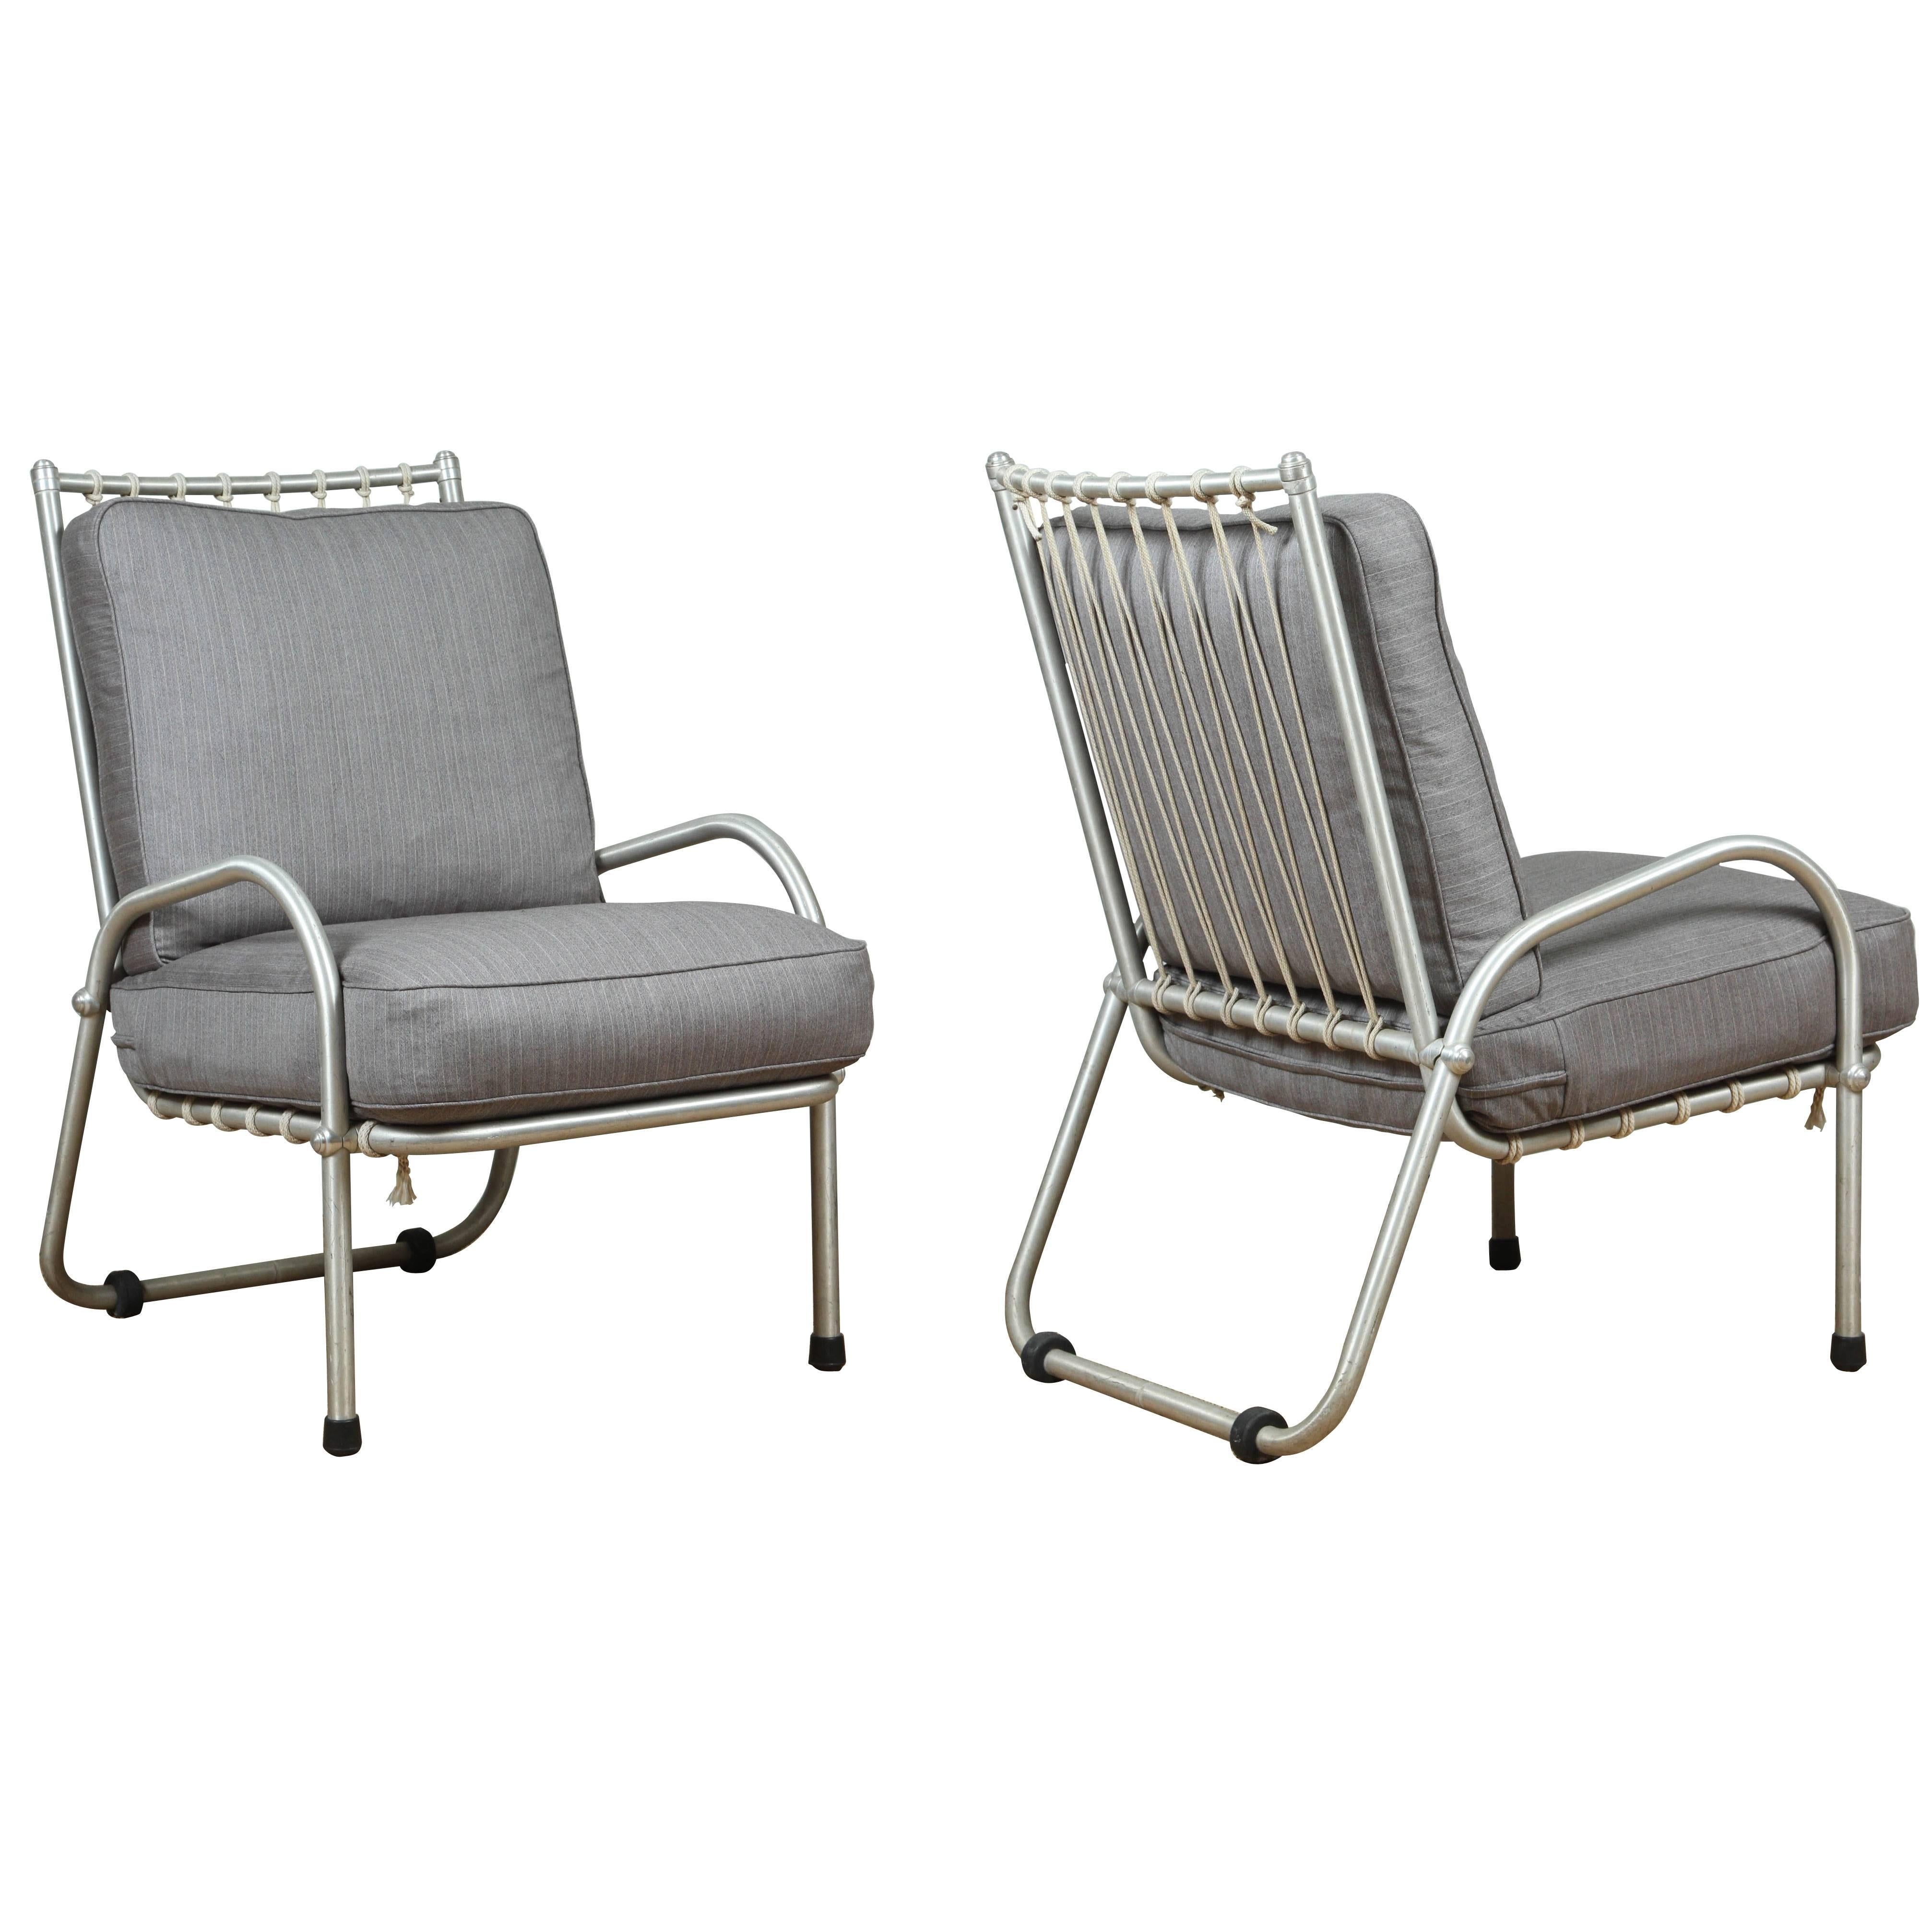 Pair of Warren McArthur Aluminum Chairs